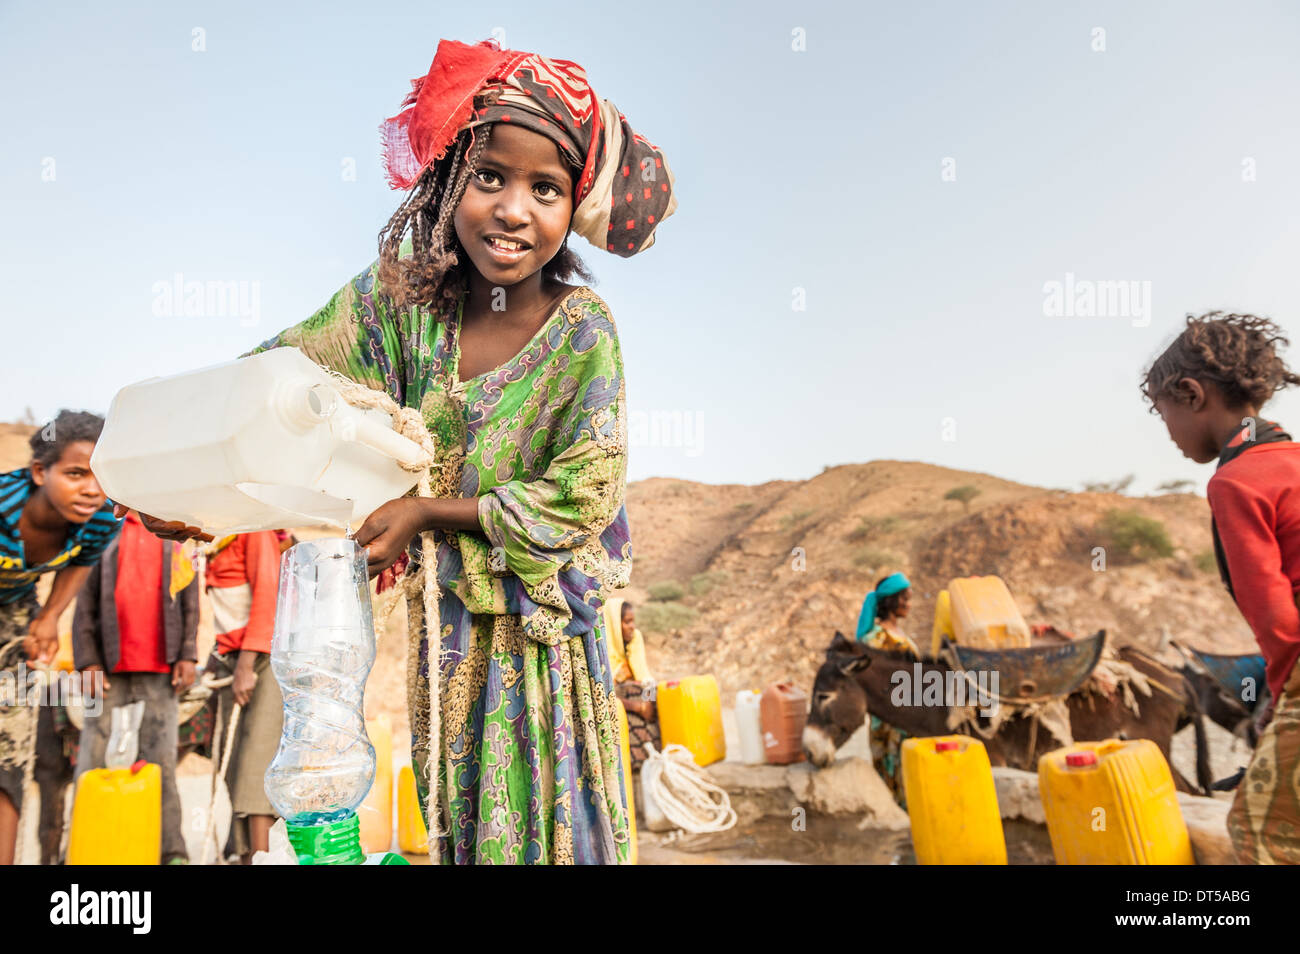 Los niños recogiendo el agua de un pozo, Berhale, Etiopía, África Foto de stock